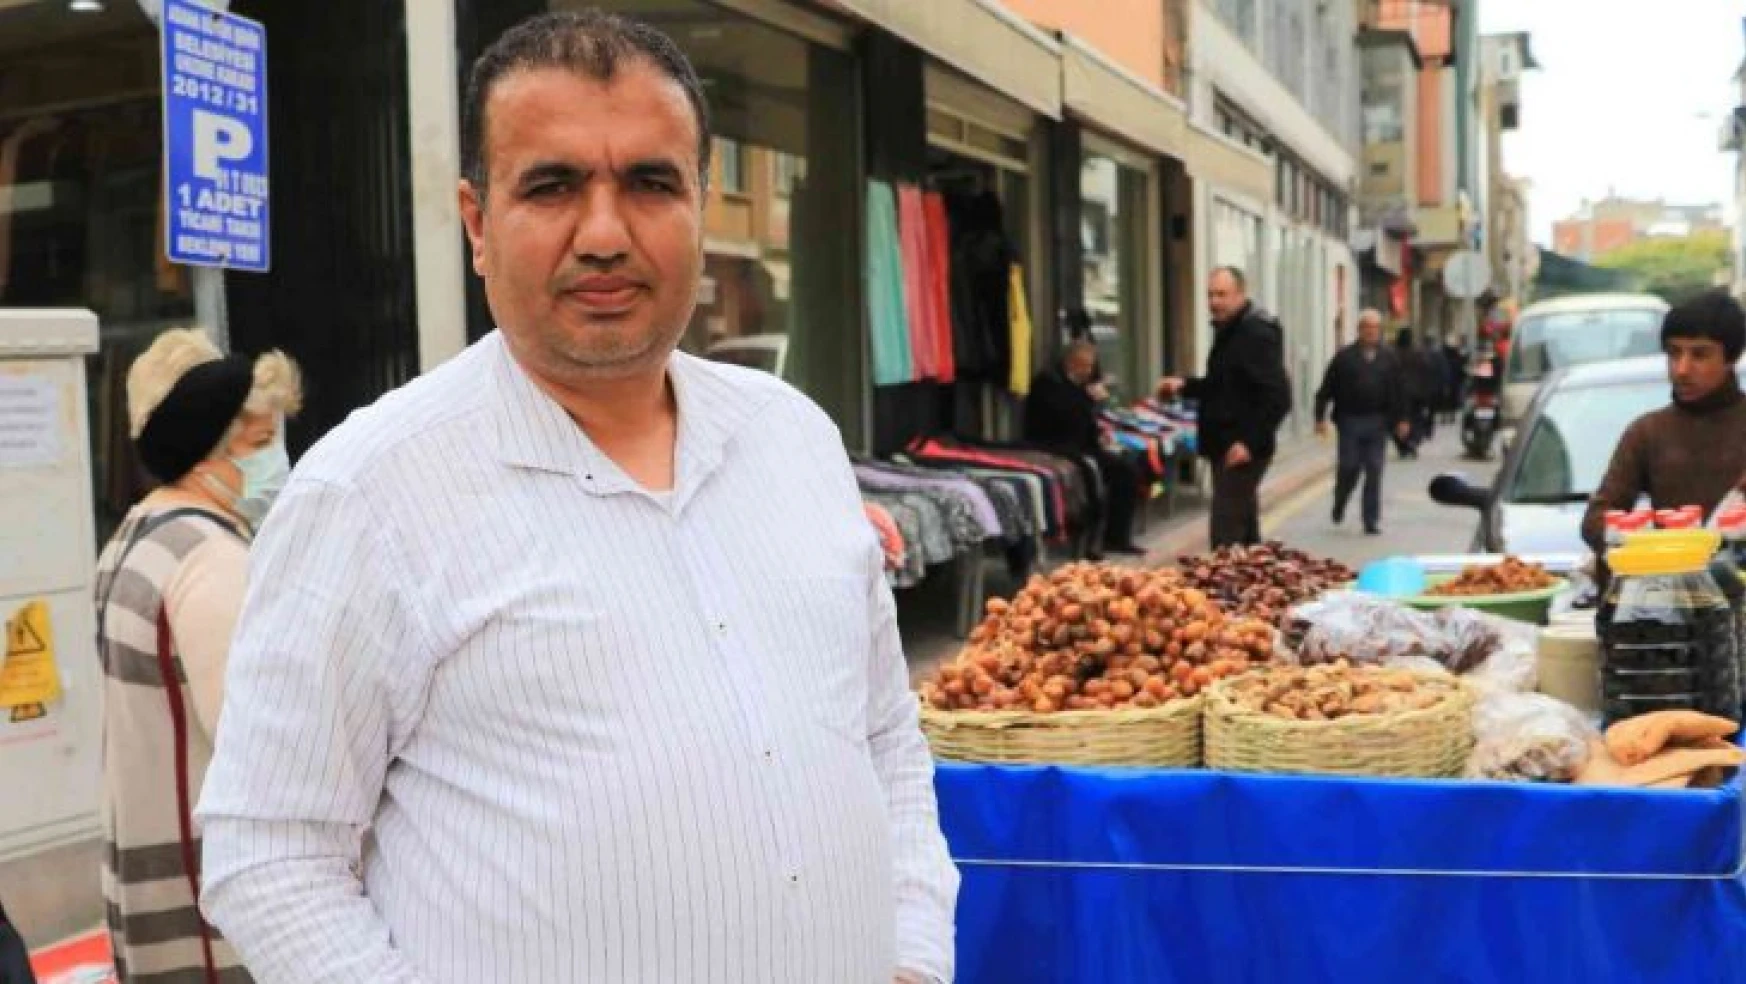 Davutoğlu'na tepki gösteren esnaf konuştu: 'İhanet haini vurur'